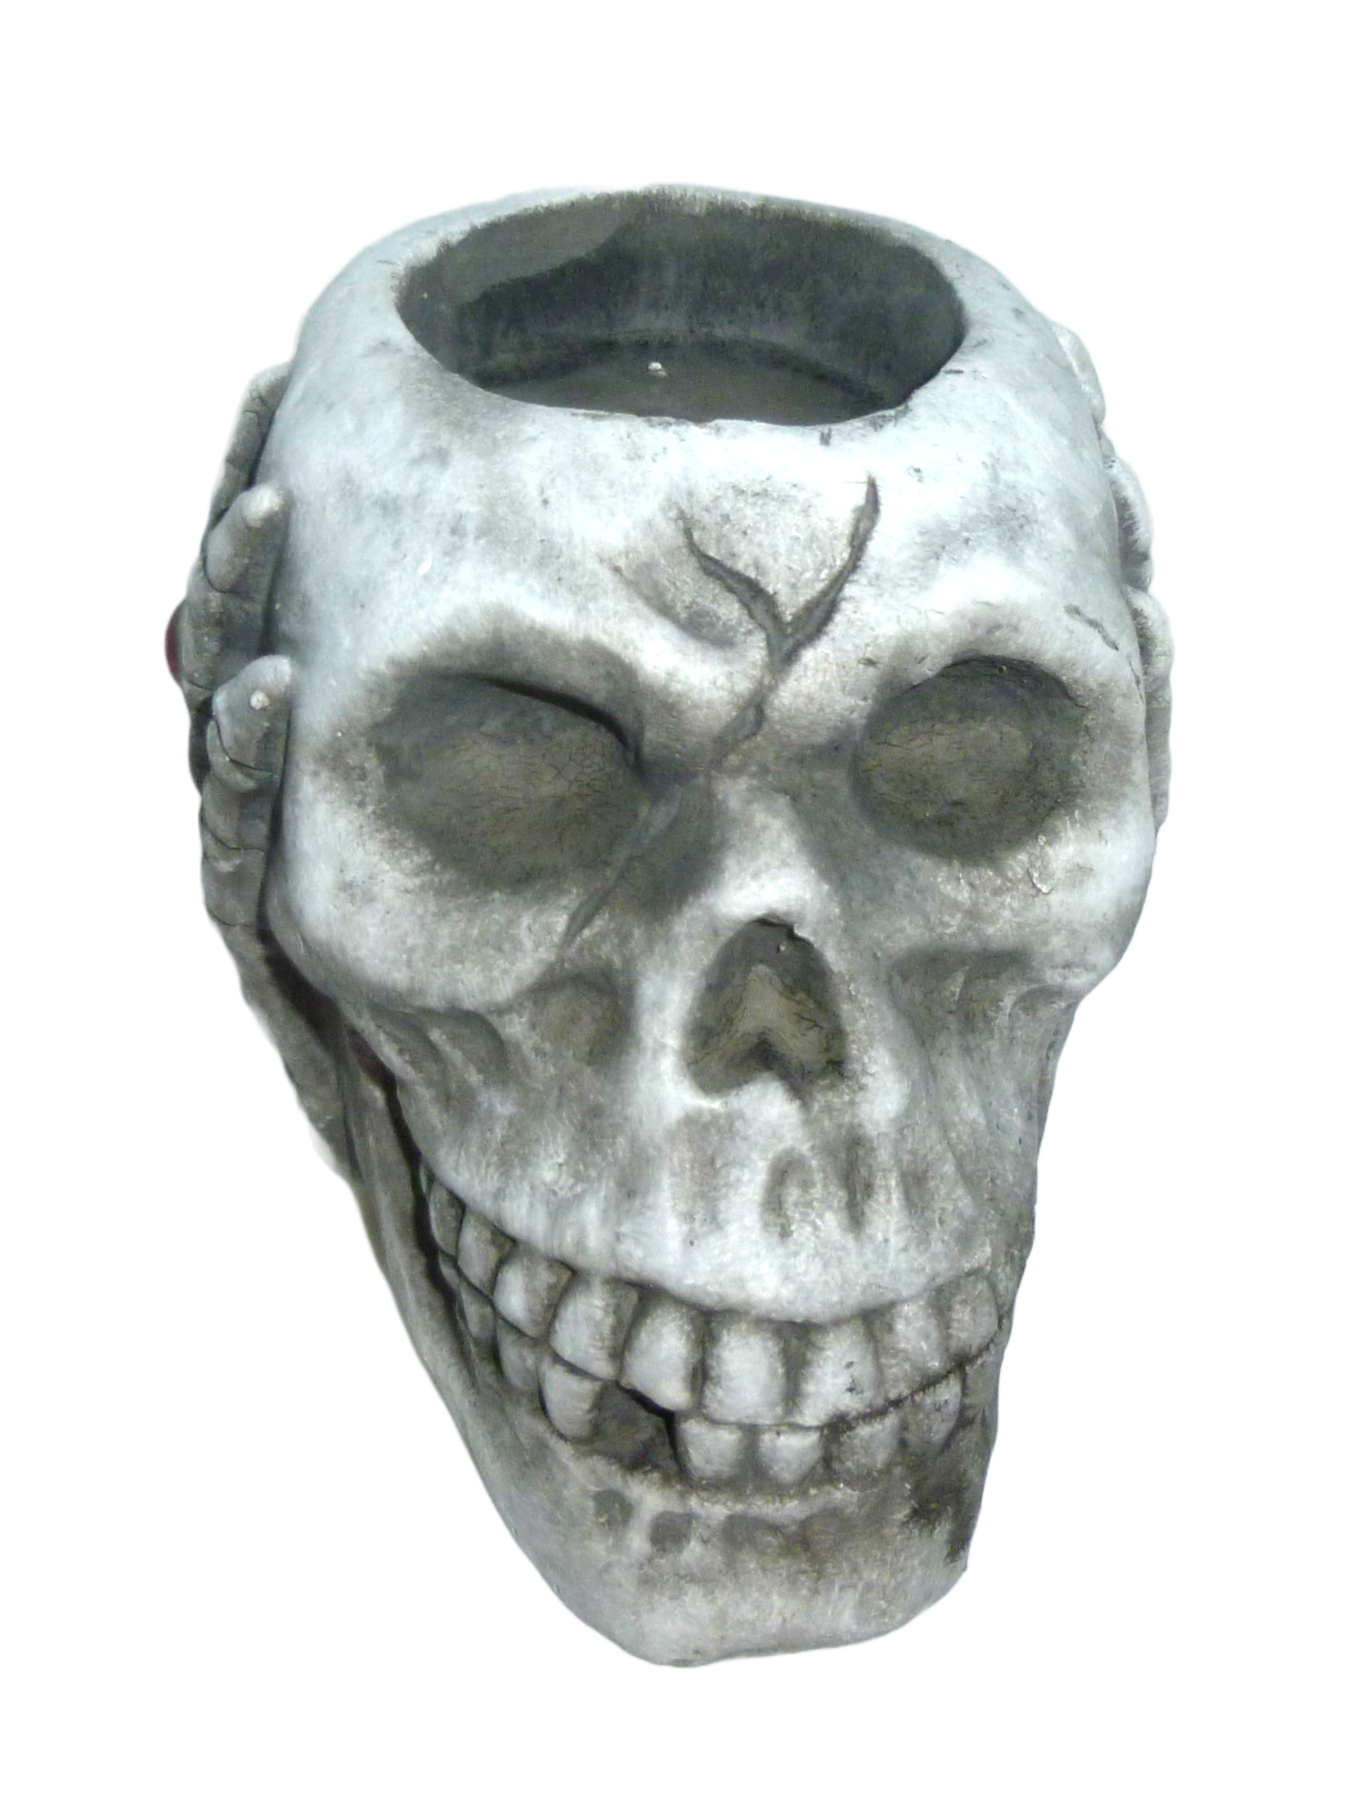 Candellana Skull Kerze - Totenkopf Kerze - Skull Deko - Totenkopf Deko -  Halloween Deko - Gothic Deko - Grunge Deko Kerze - Heavy Metal Deko -  Grunge